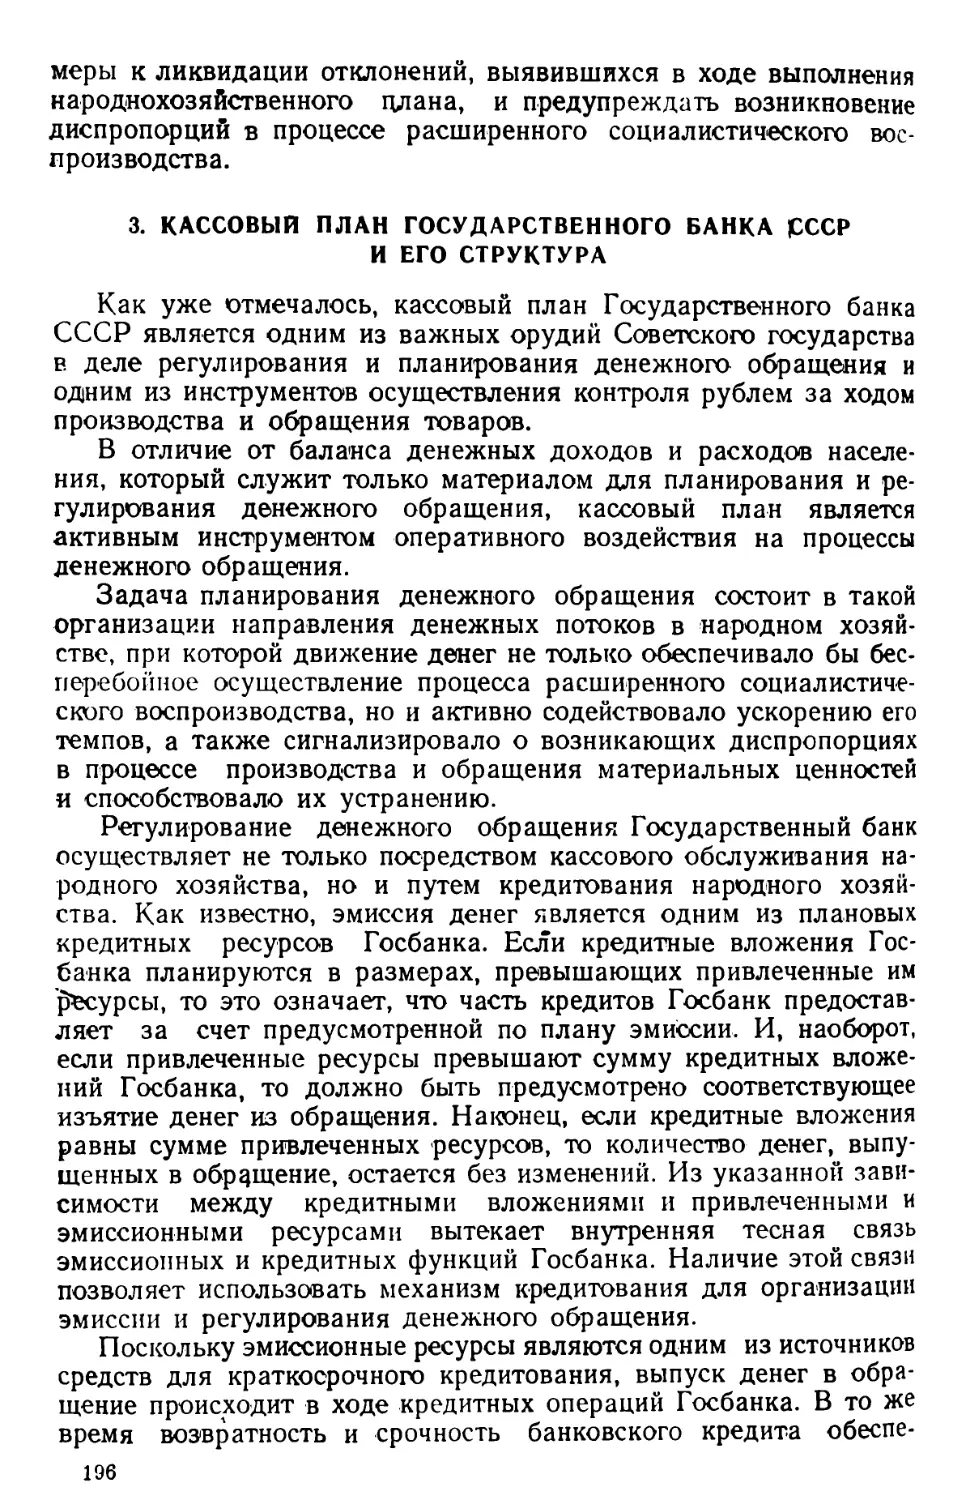 3. Кассовый план Государственного банка СССР и его структура